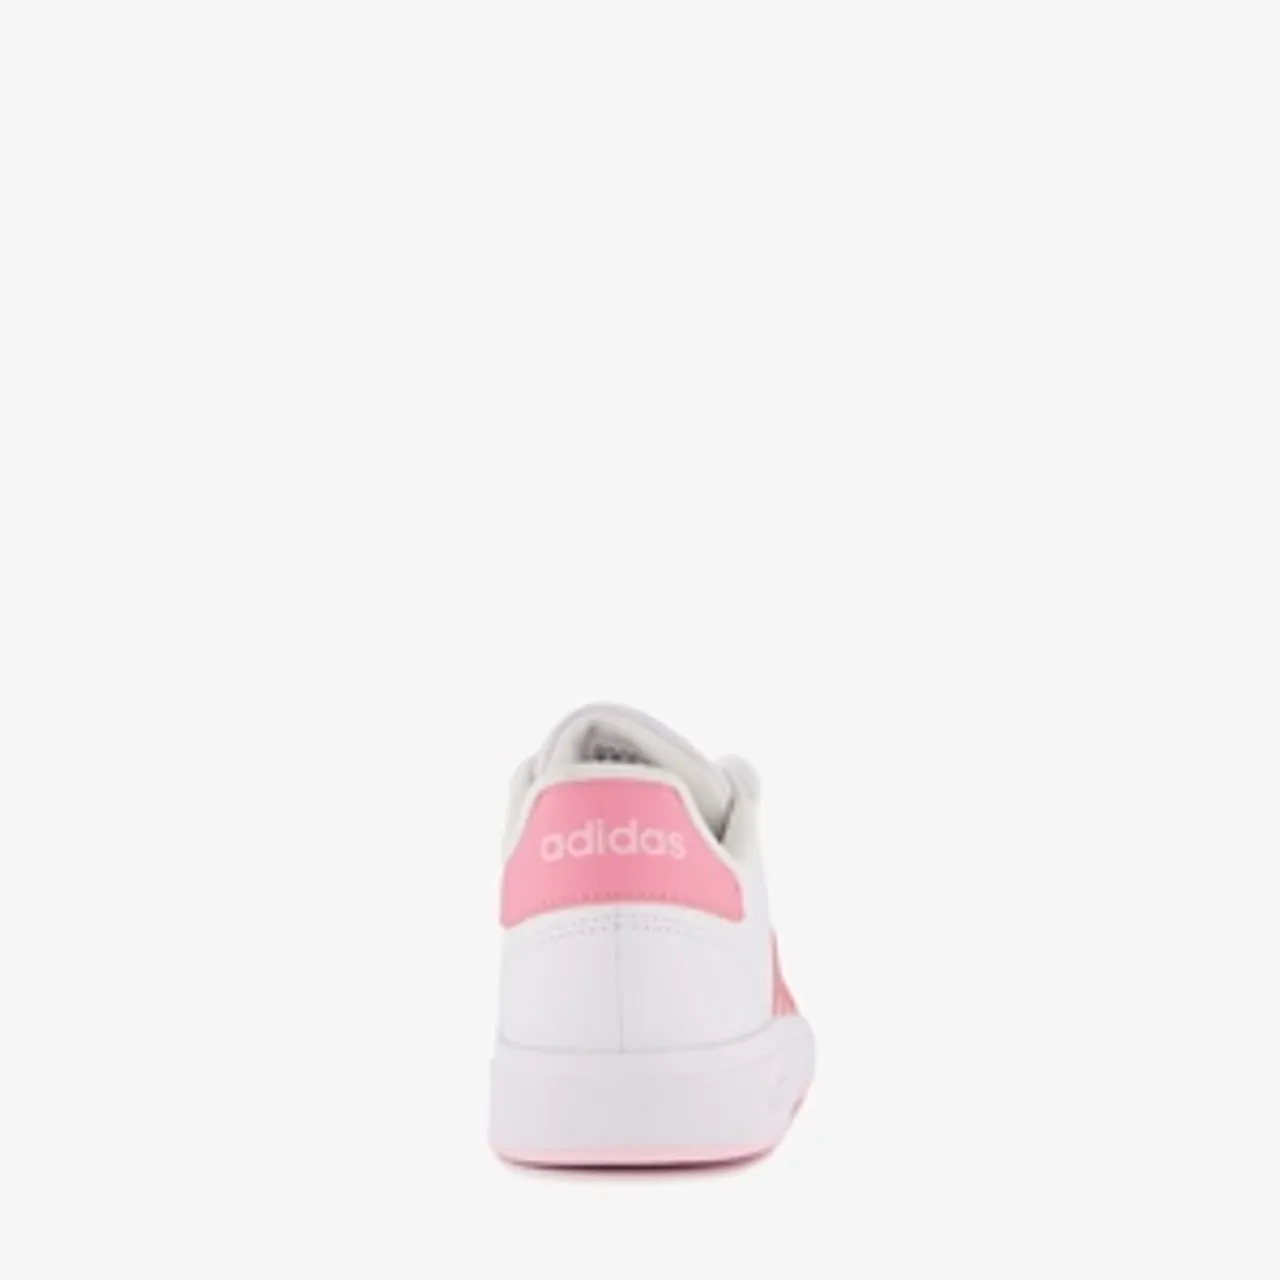 Puma Grand Court 2.0 meisjes sneakers wit roze